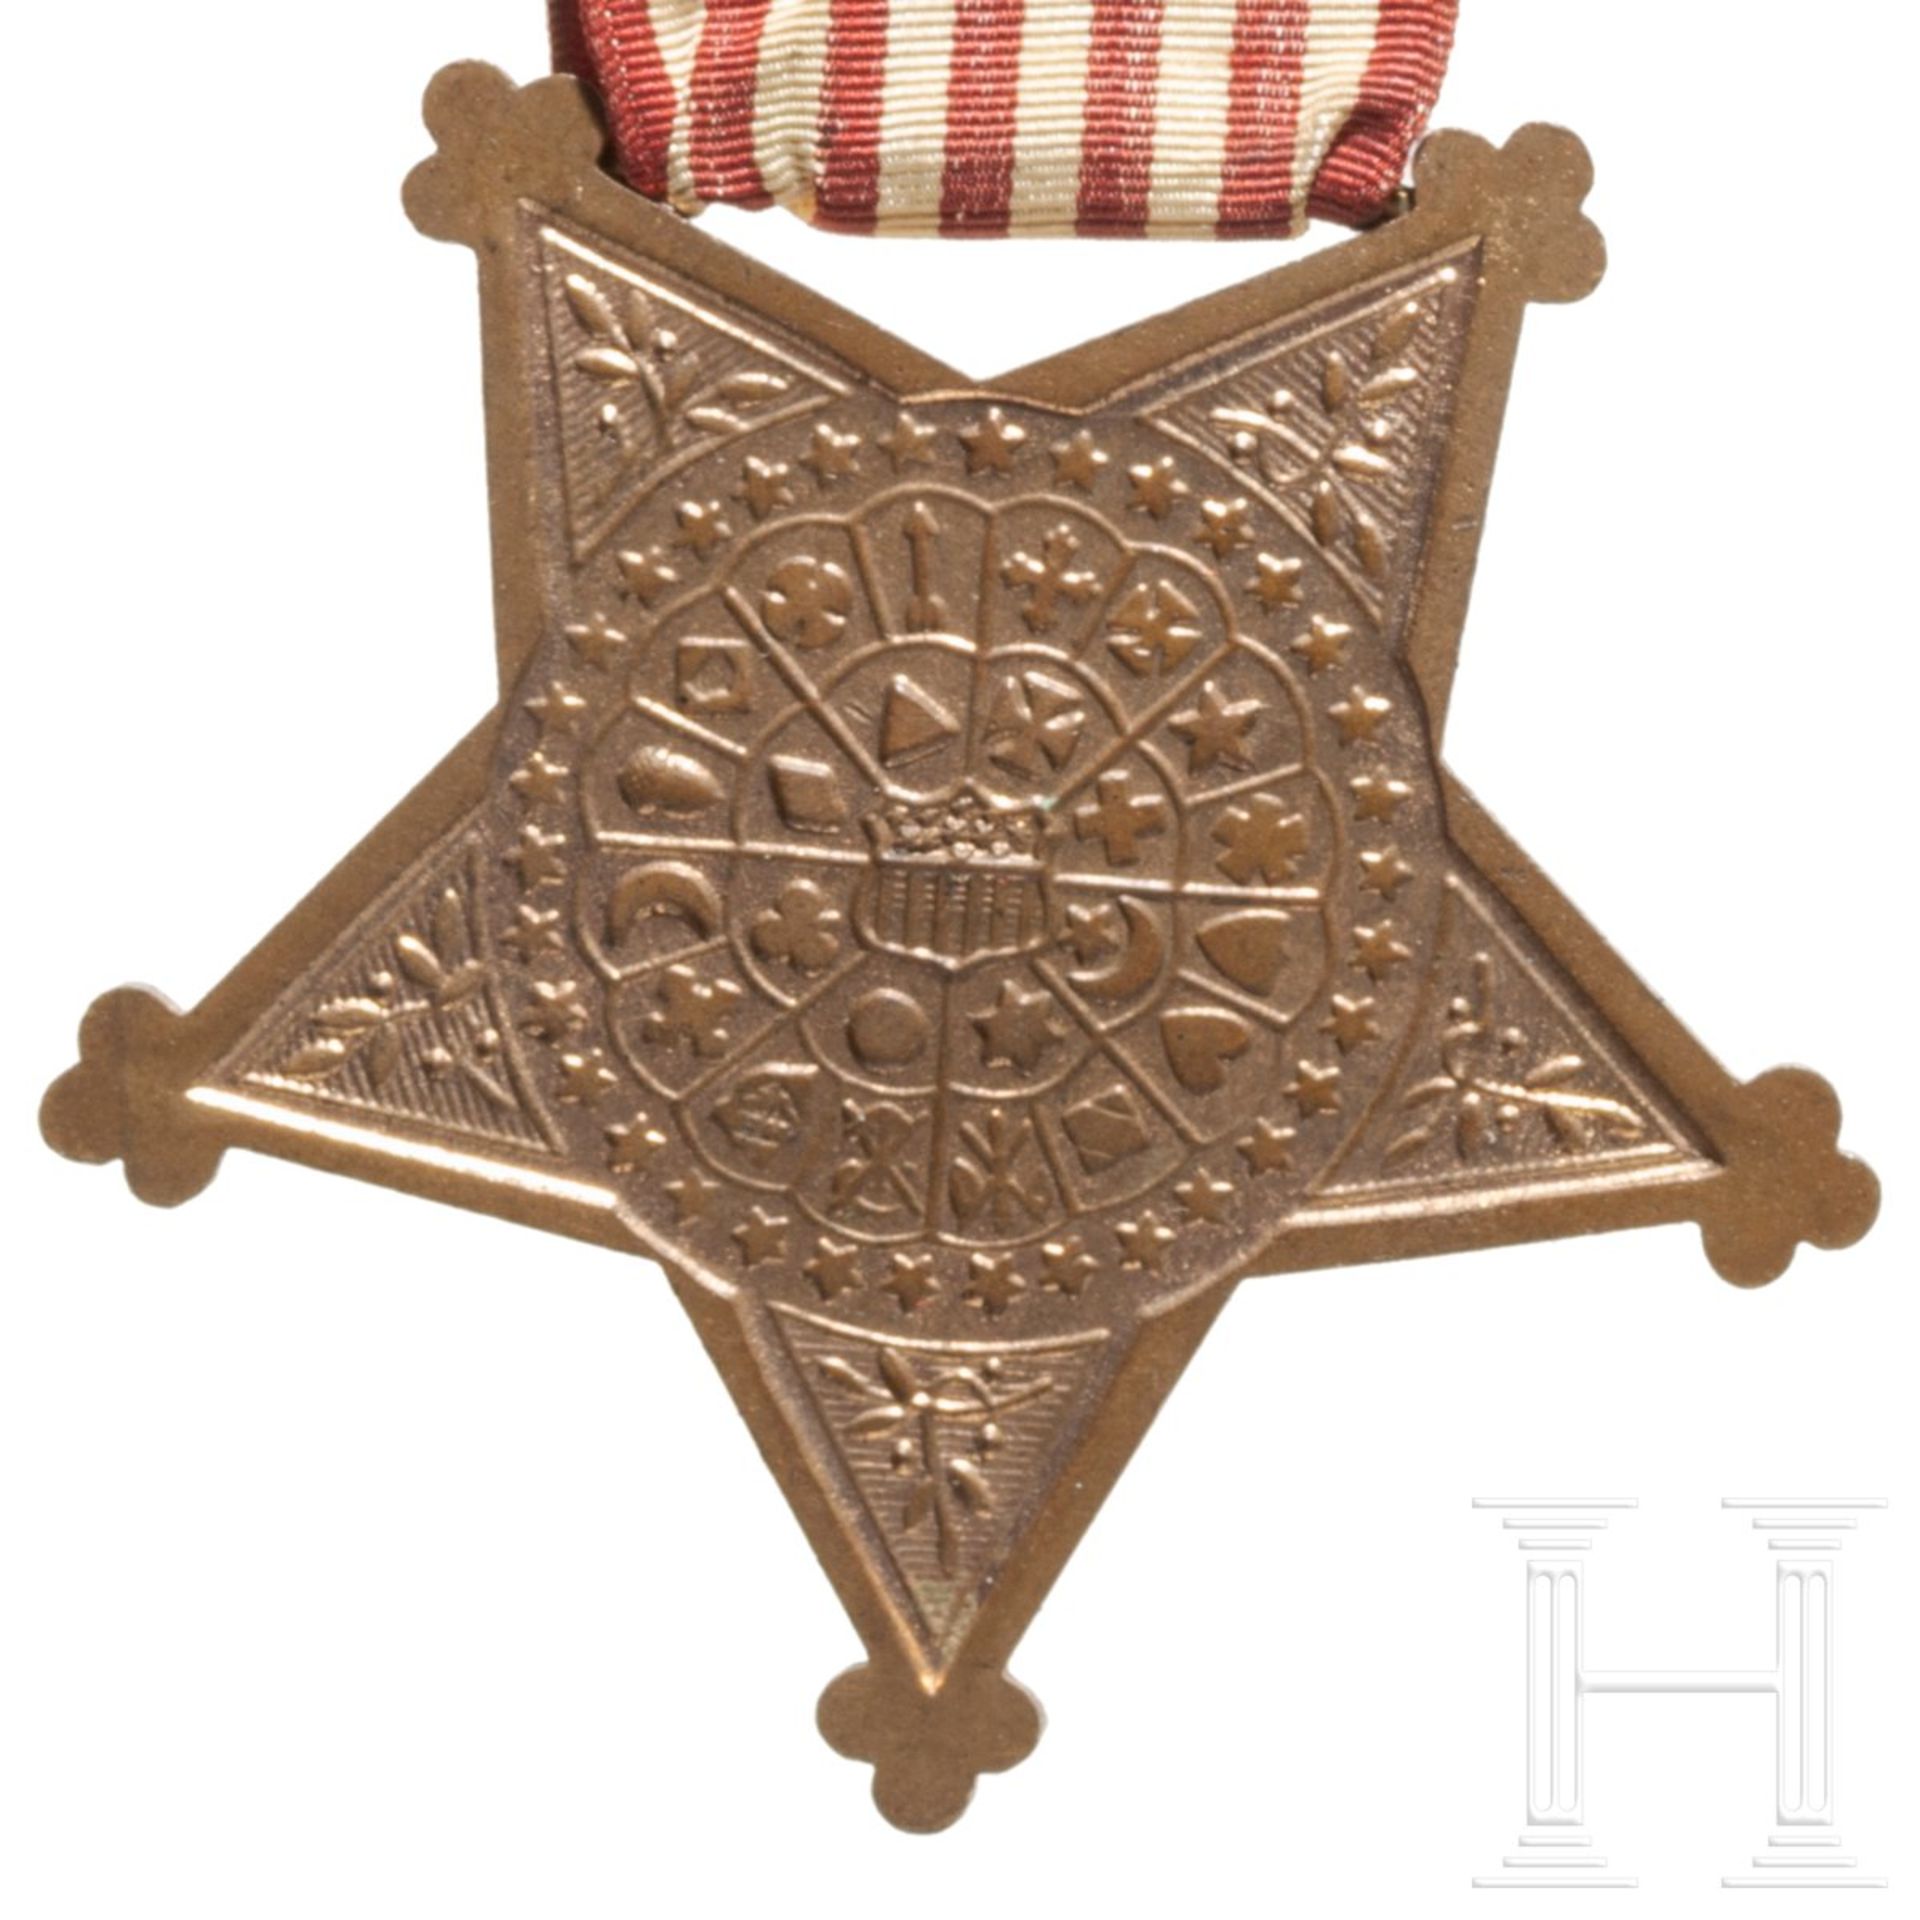 Sgt. John Karr – Congressional Medal of Honor als Mitglied der Ehrengarde für den verstorbenen Präsi - Bild 10 aus 11